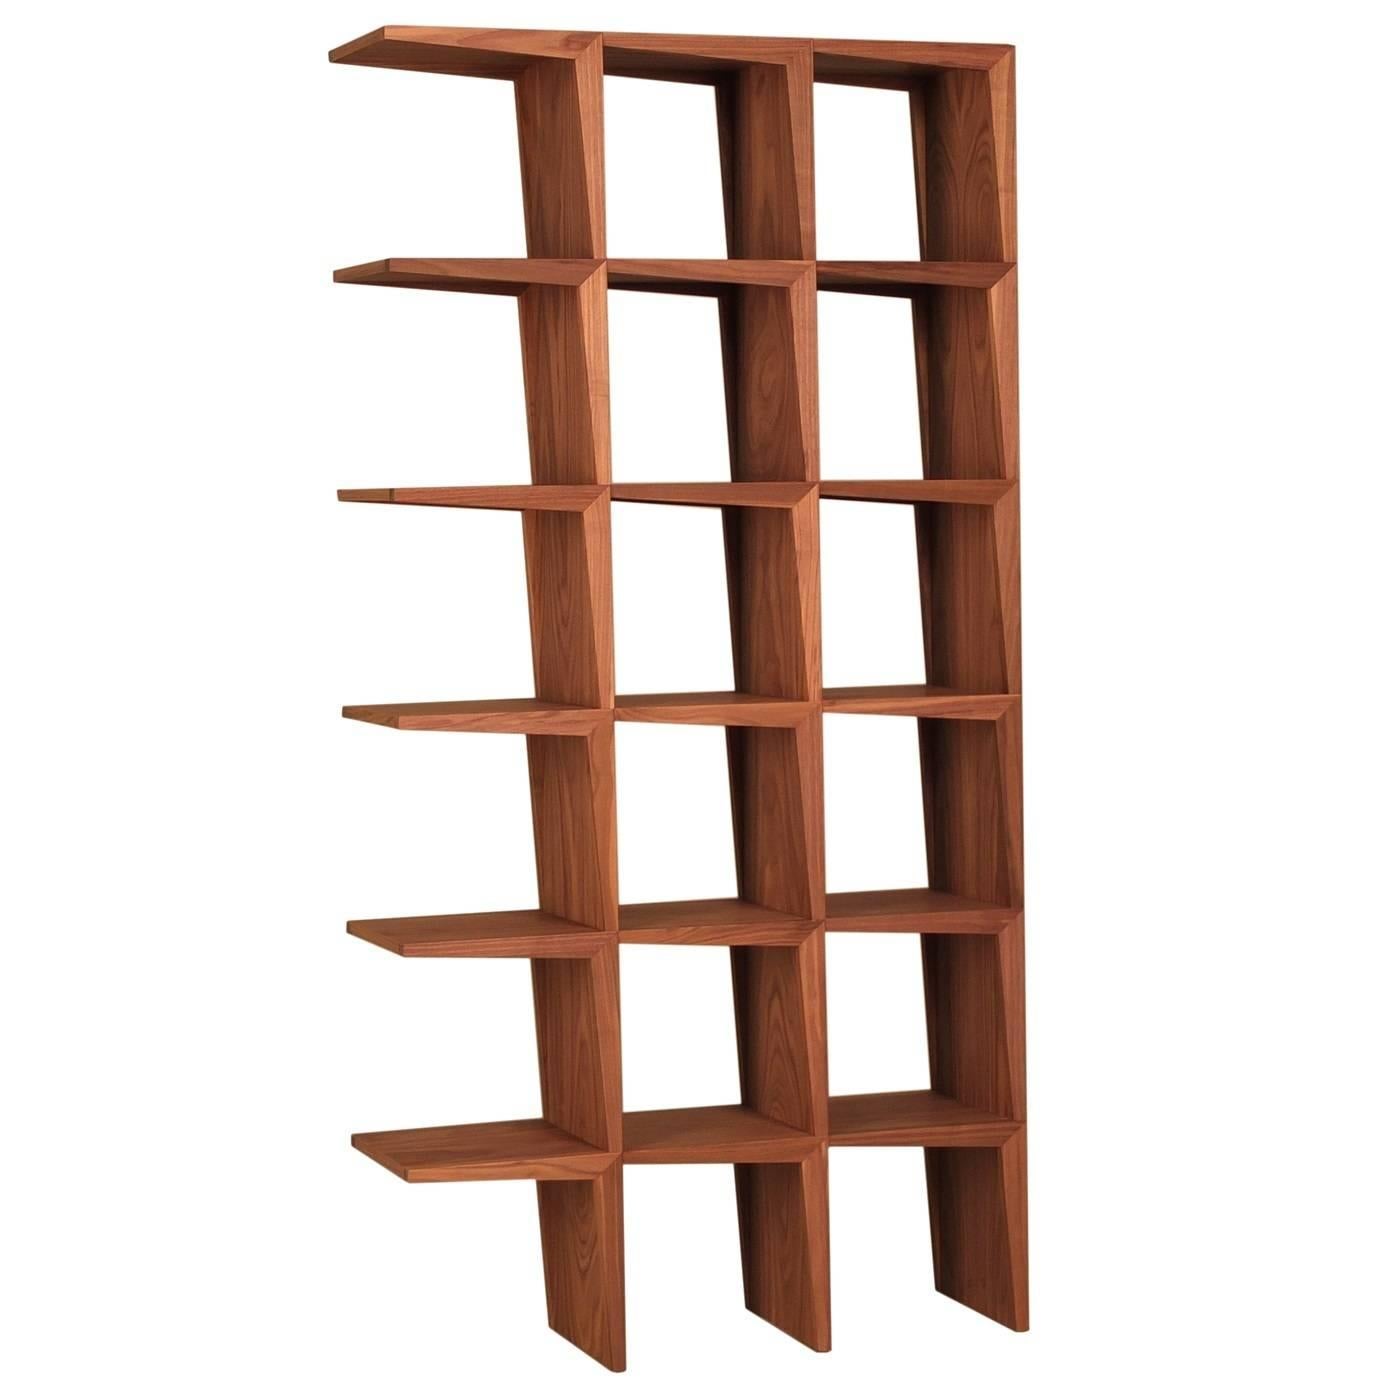 Dieses vom berühmten israelischen Architekten Itamar Harari entworfene Bücherregal aus Nussbaumholz kann beidseitig verwendet werden und ist somit auch ein raffinierter und moderner Raumteiler. Die einzigartige Silhouette, bei der eine Seite offen